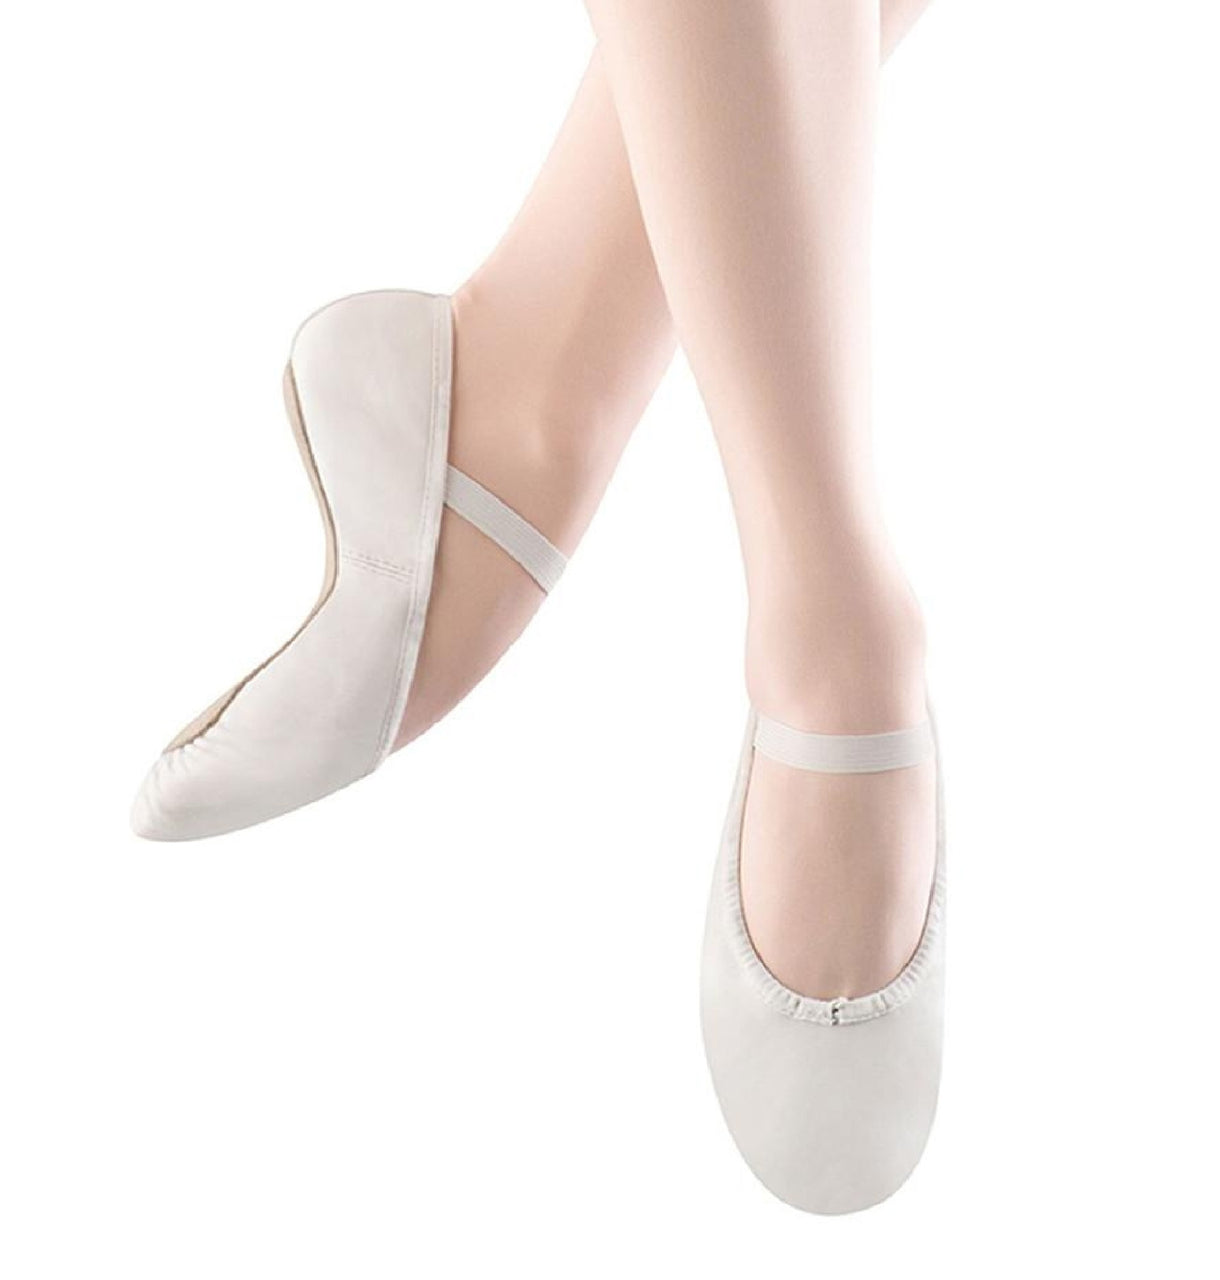 Bloch S0205l Dansoft Ballet Shoe White Ladies The Dance Shop 